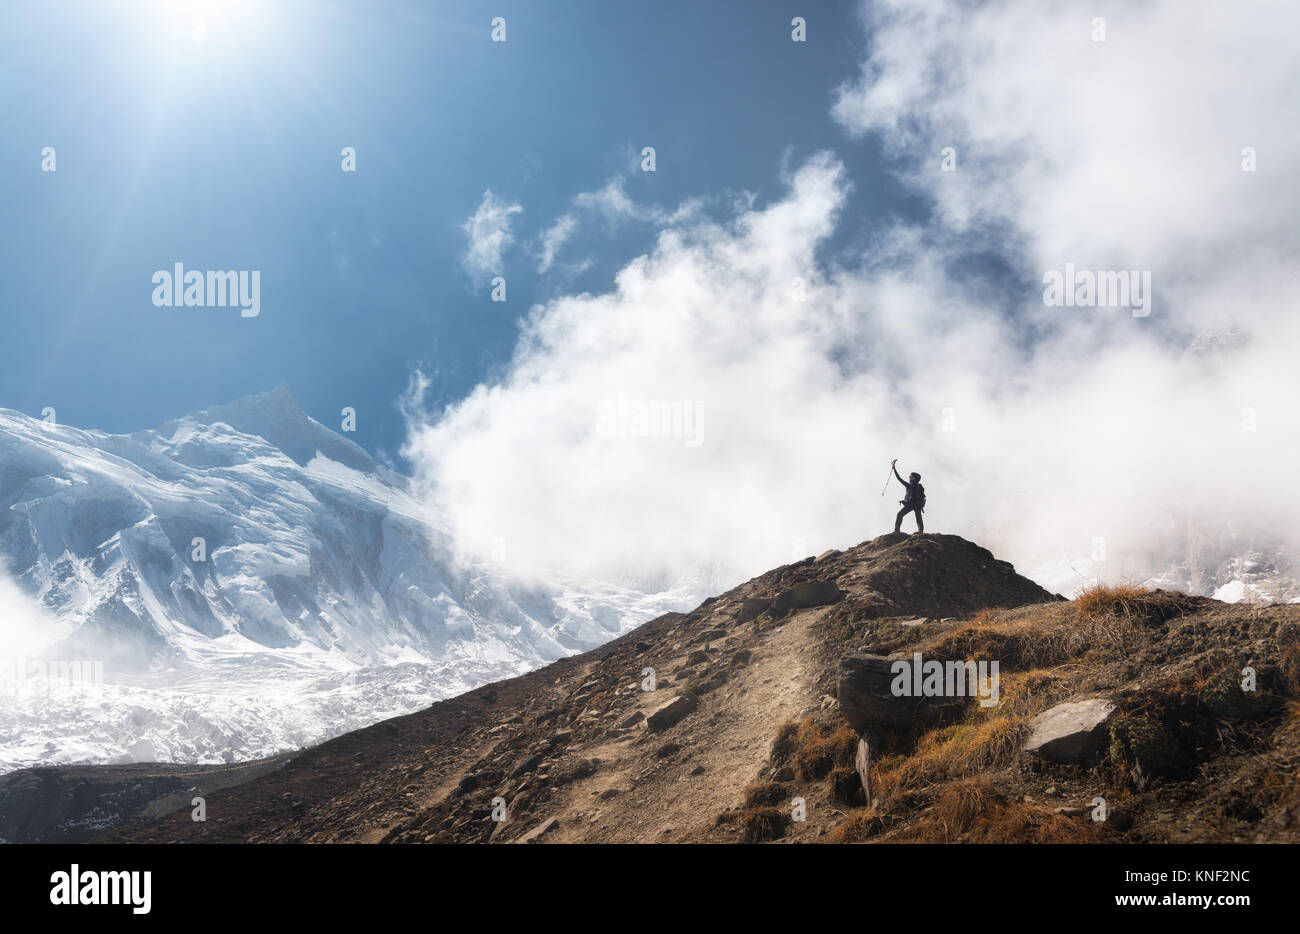 Stehende junge Frau mit erhobenen Armen auf dem Gipfel gegen den blauen Himmel mit Wolken in den hellen Tag. Landschaft mit Happy girl auf dem Hügel, s Stockfoto